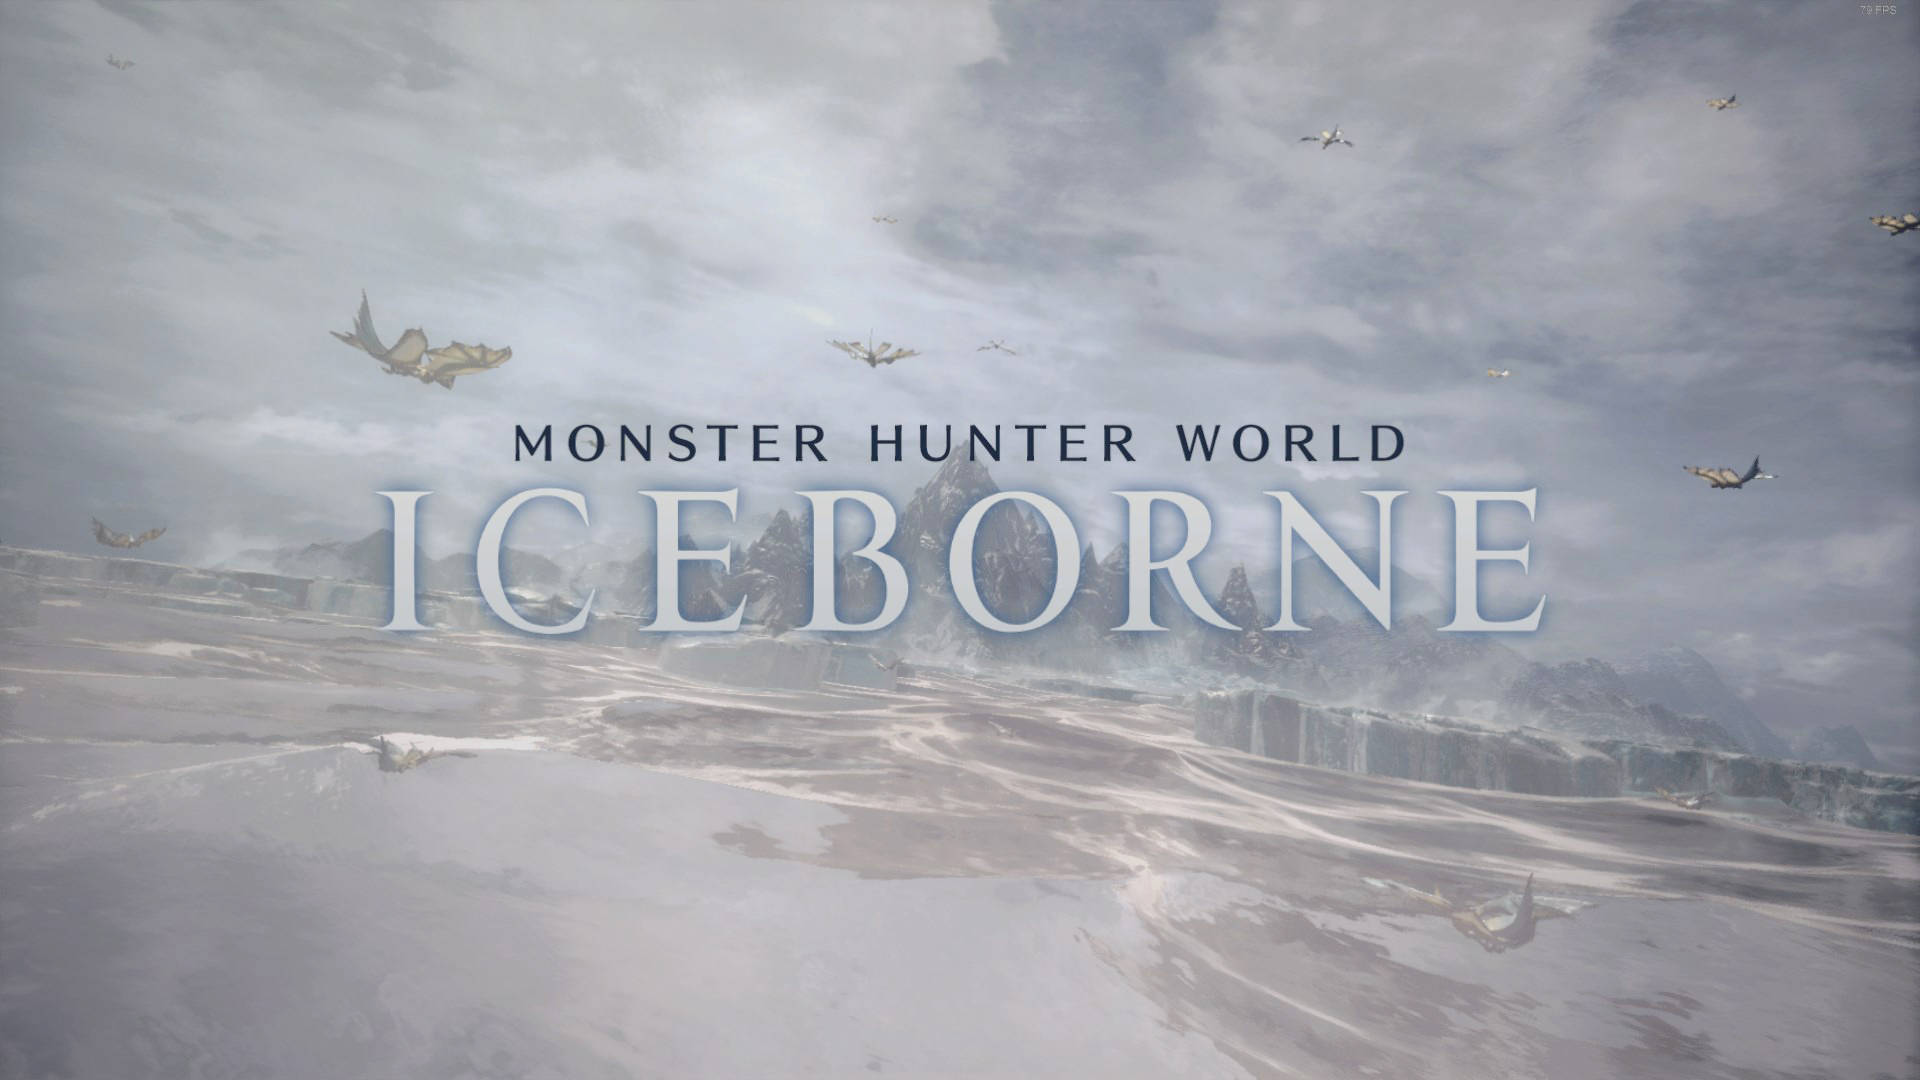 Monster Hunter World Iceborne PC Game Poster Wallpaper